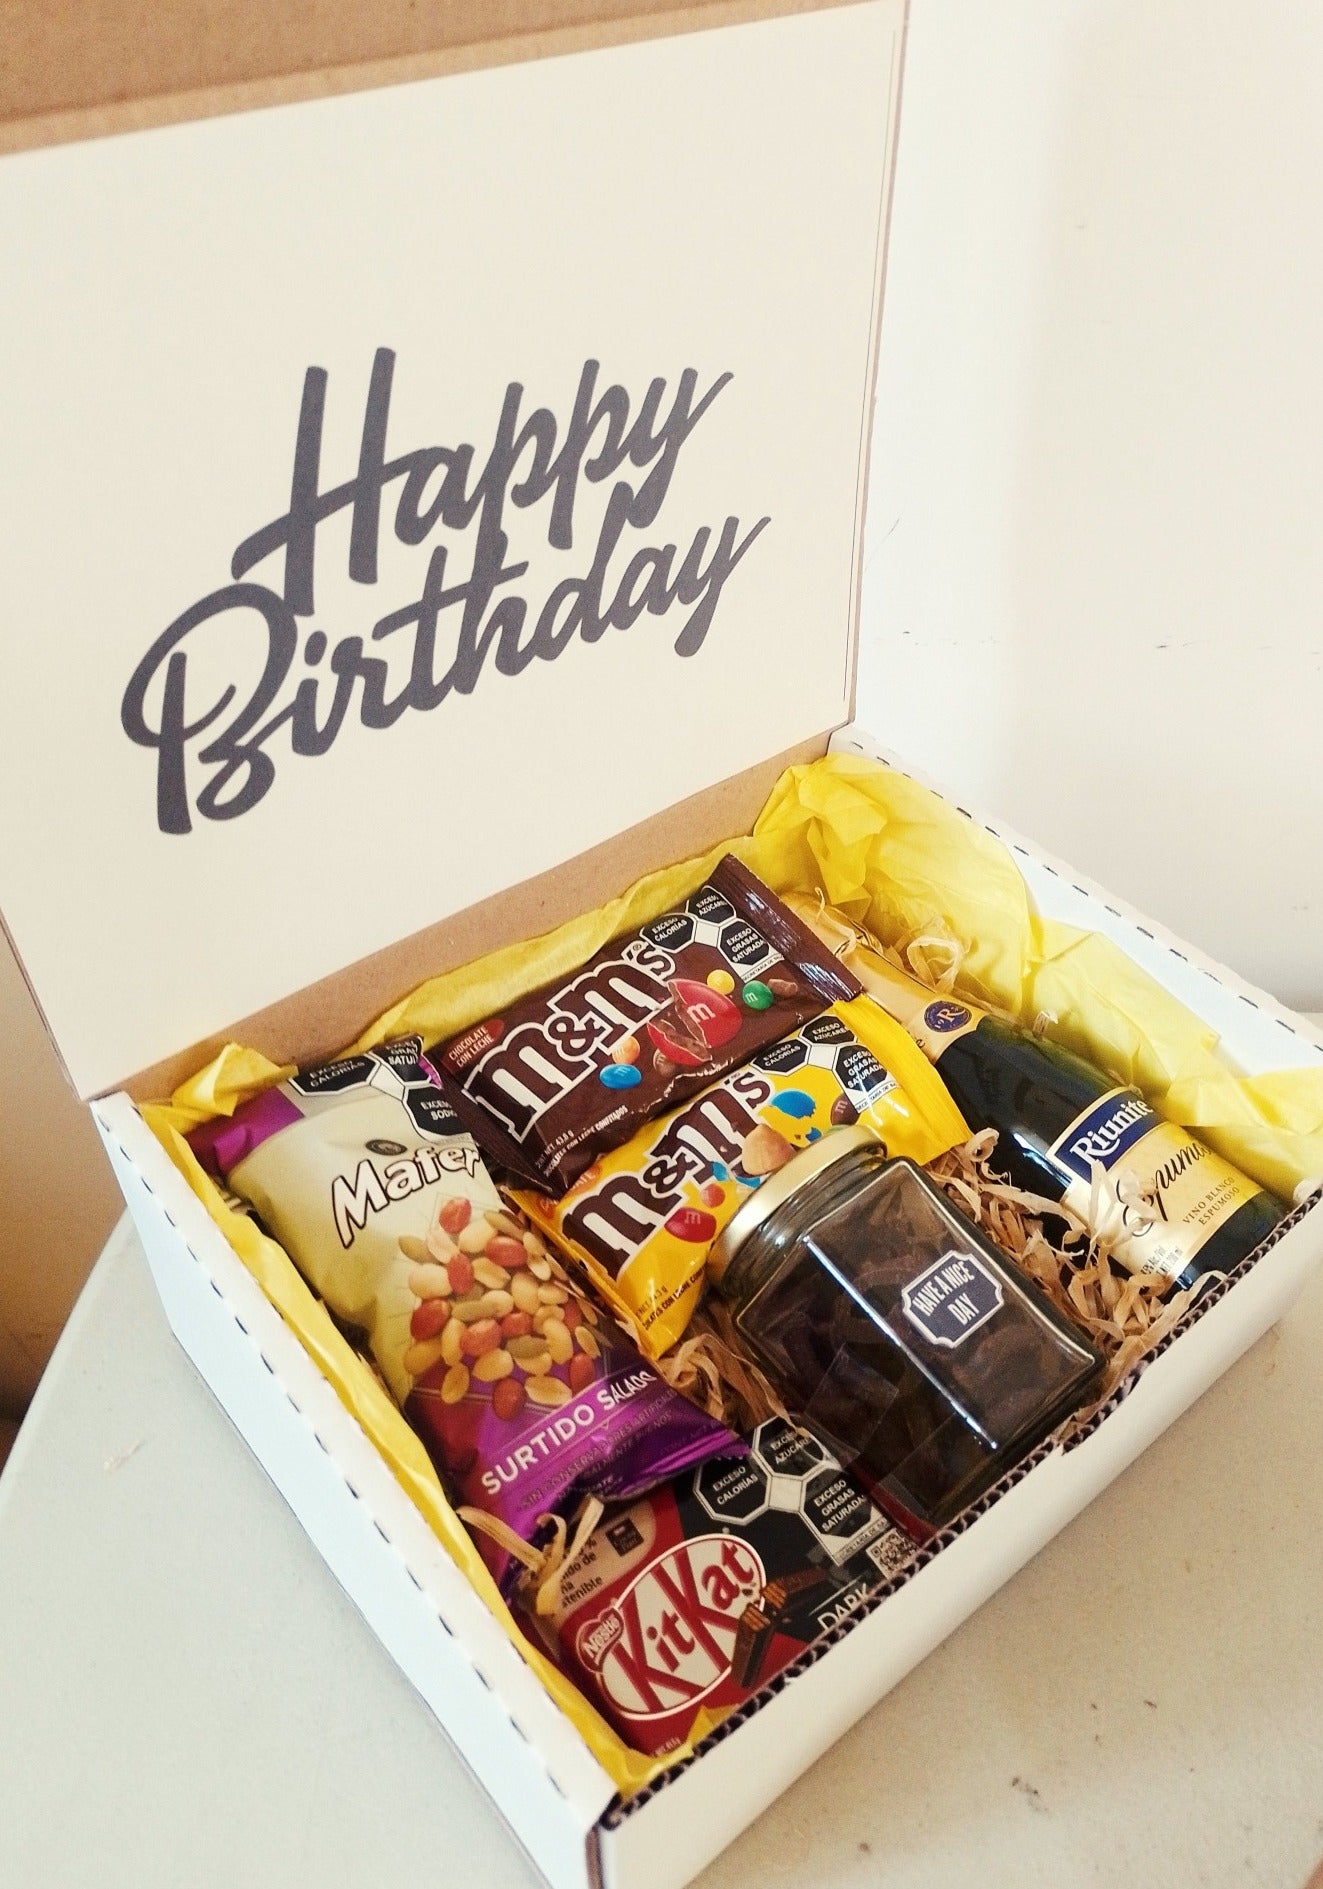 box con vino espumoso riunite pretzels y botanas y chocolates para regalo de cumpleaños regalo con vino espumoso pretzels y chocolates. Regalo corporativo 